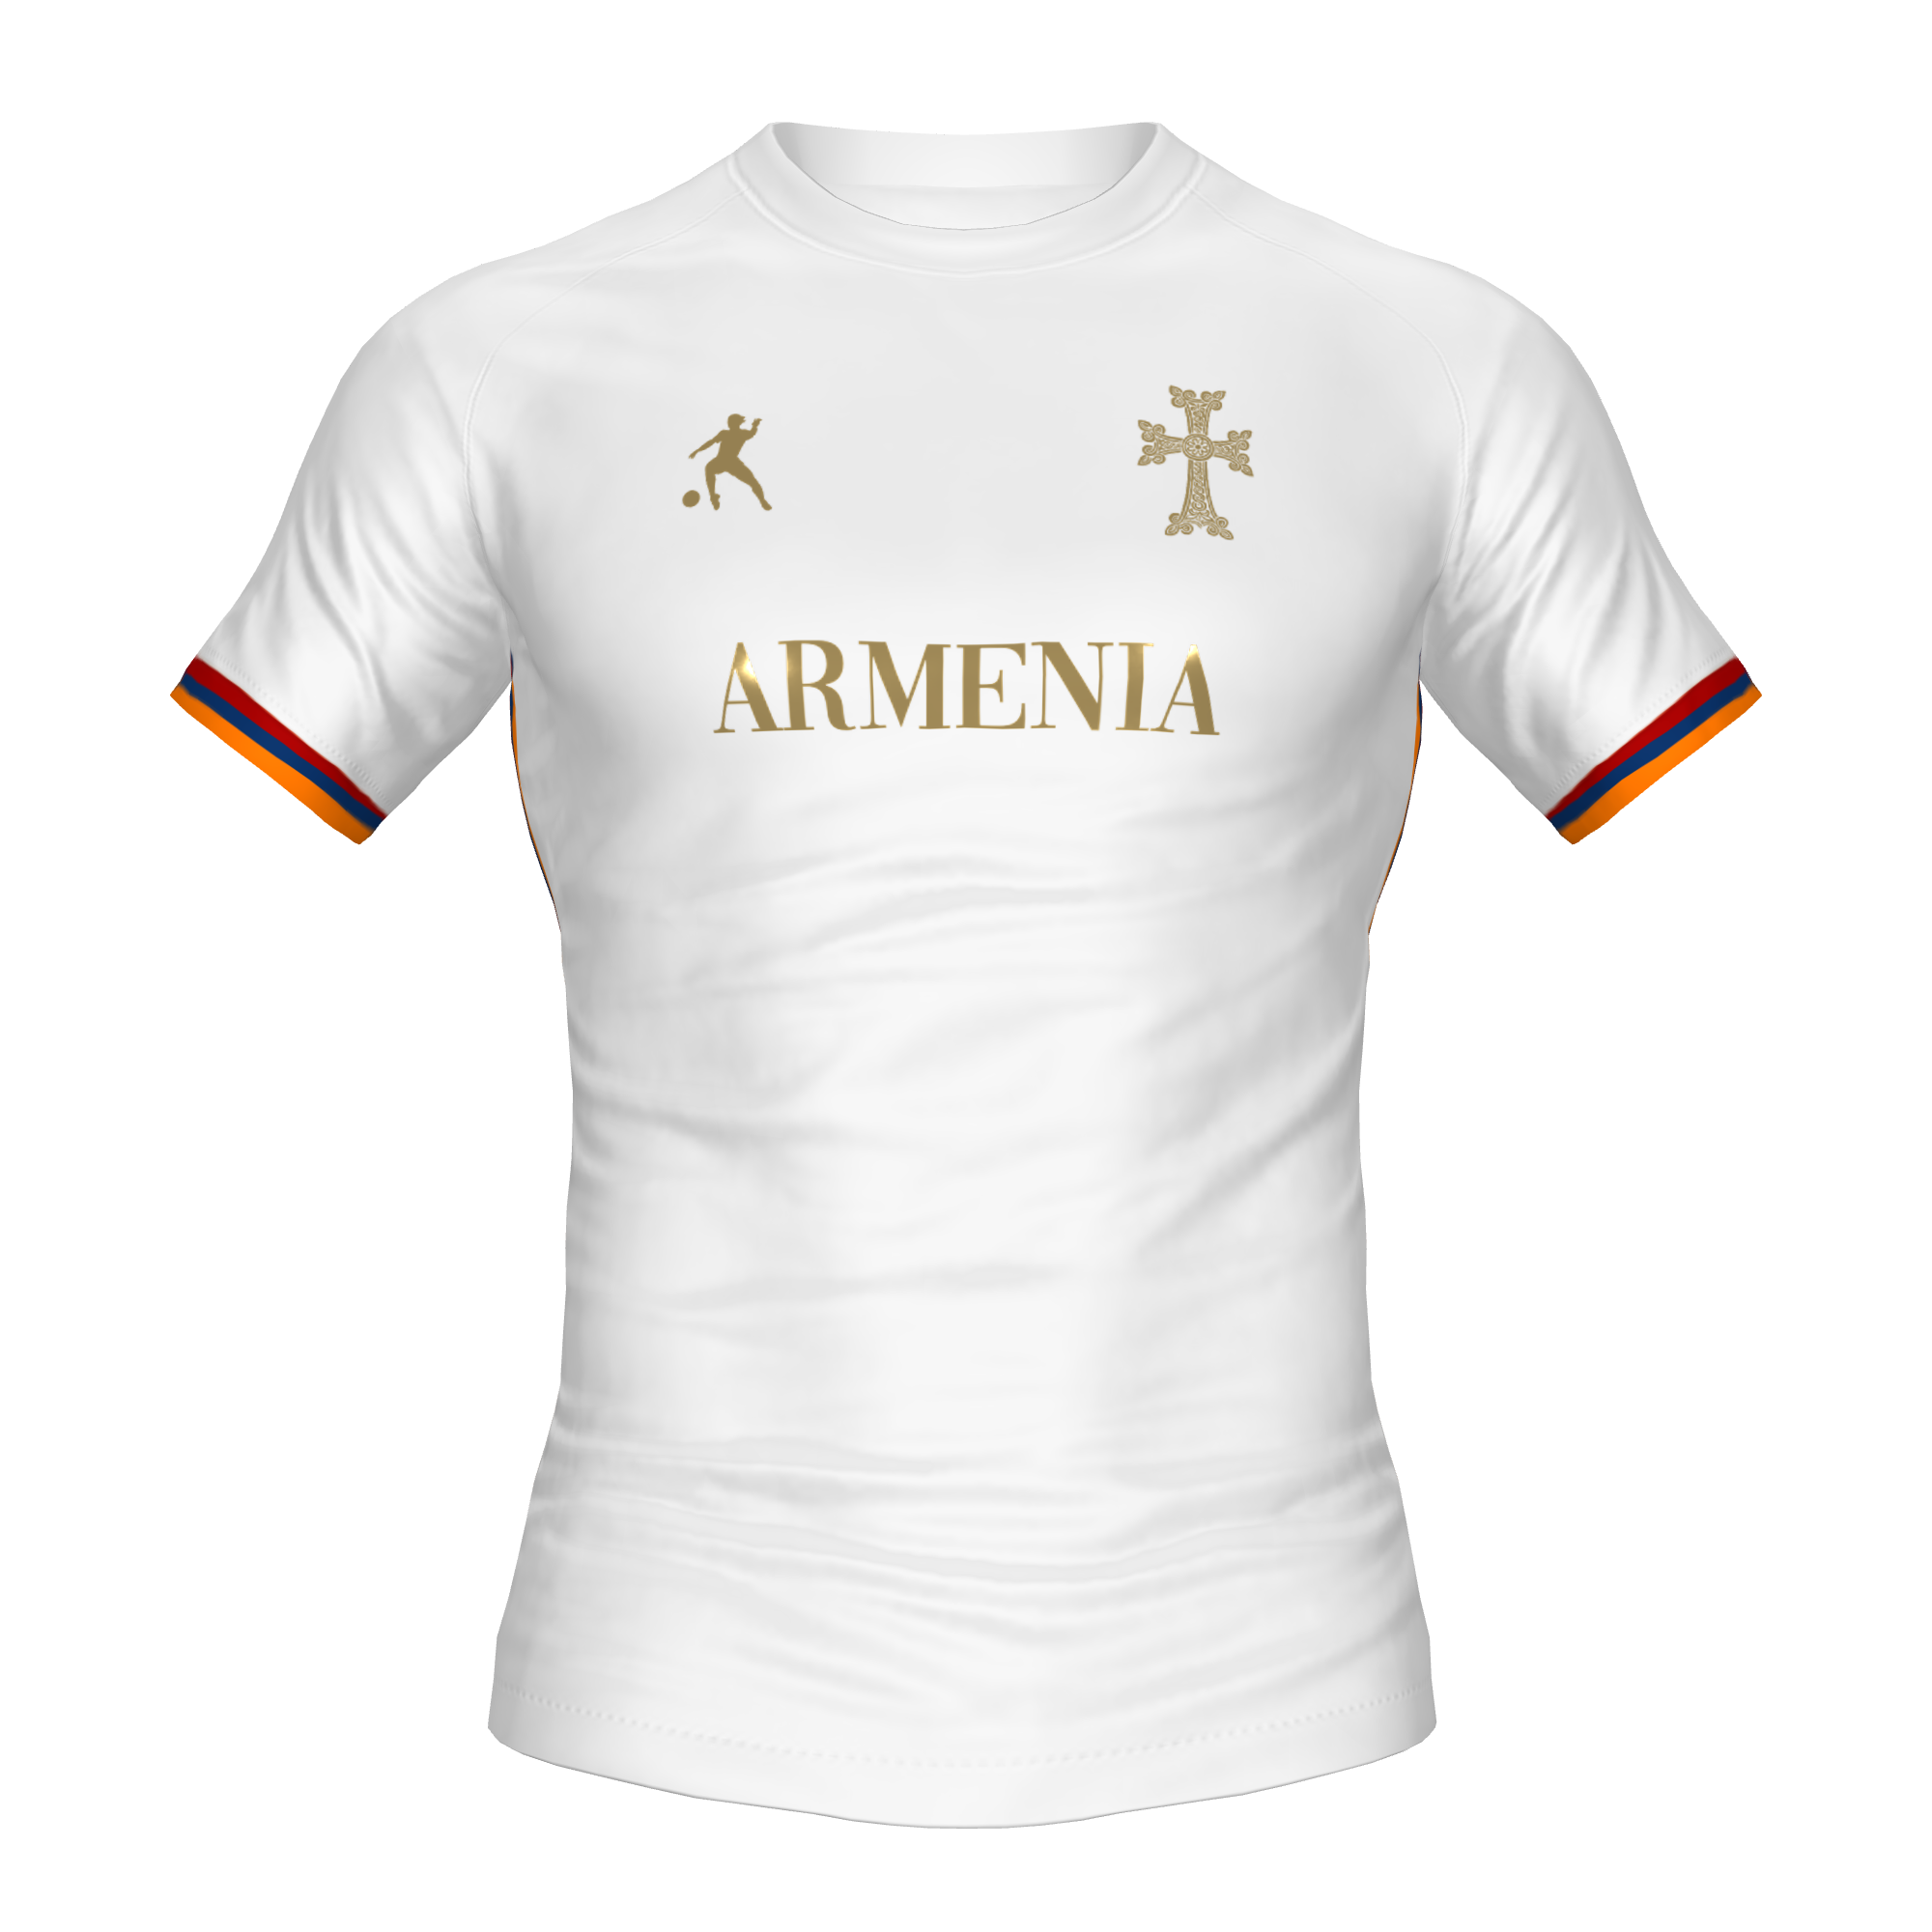 ARMENIA FOOTBALL SHIRT - LAIB